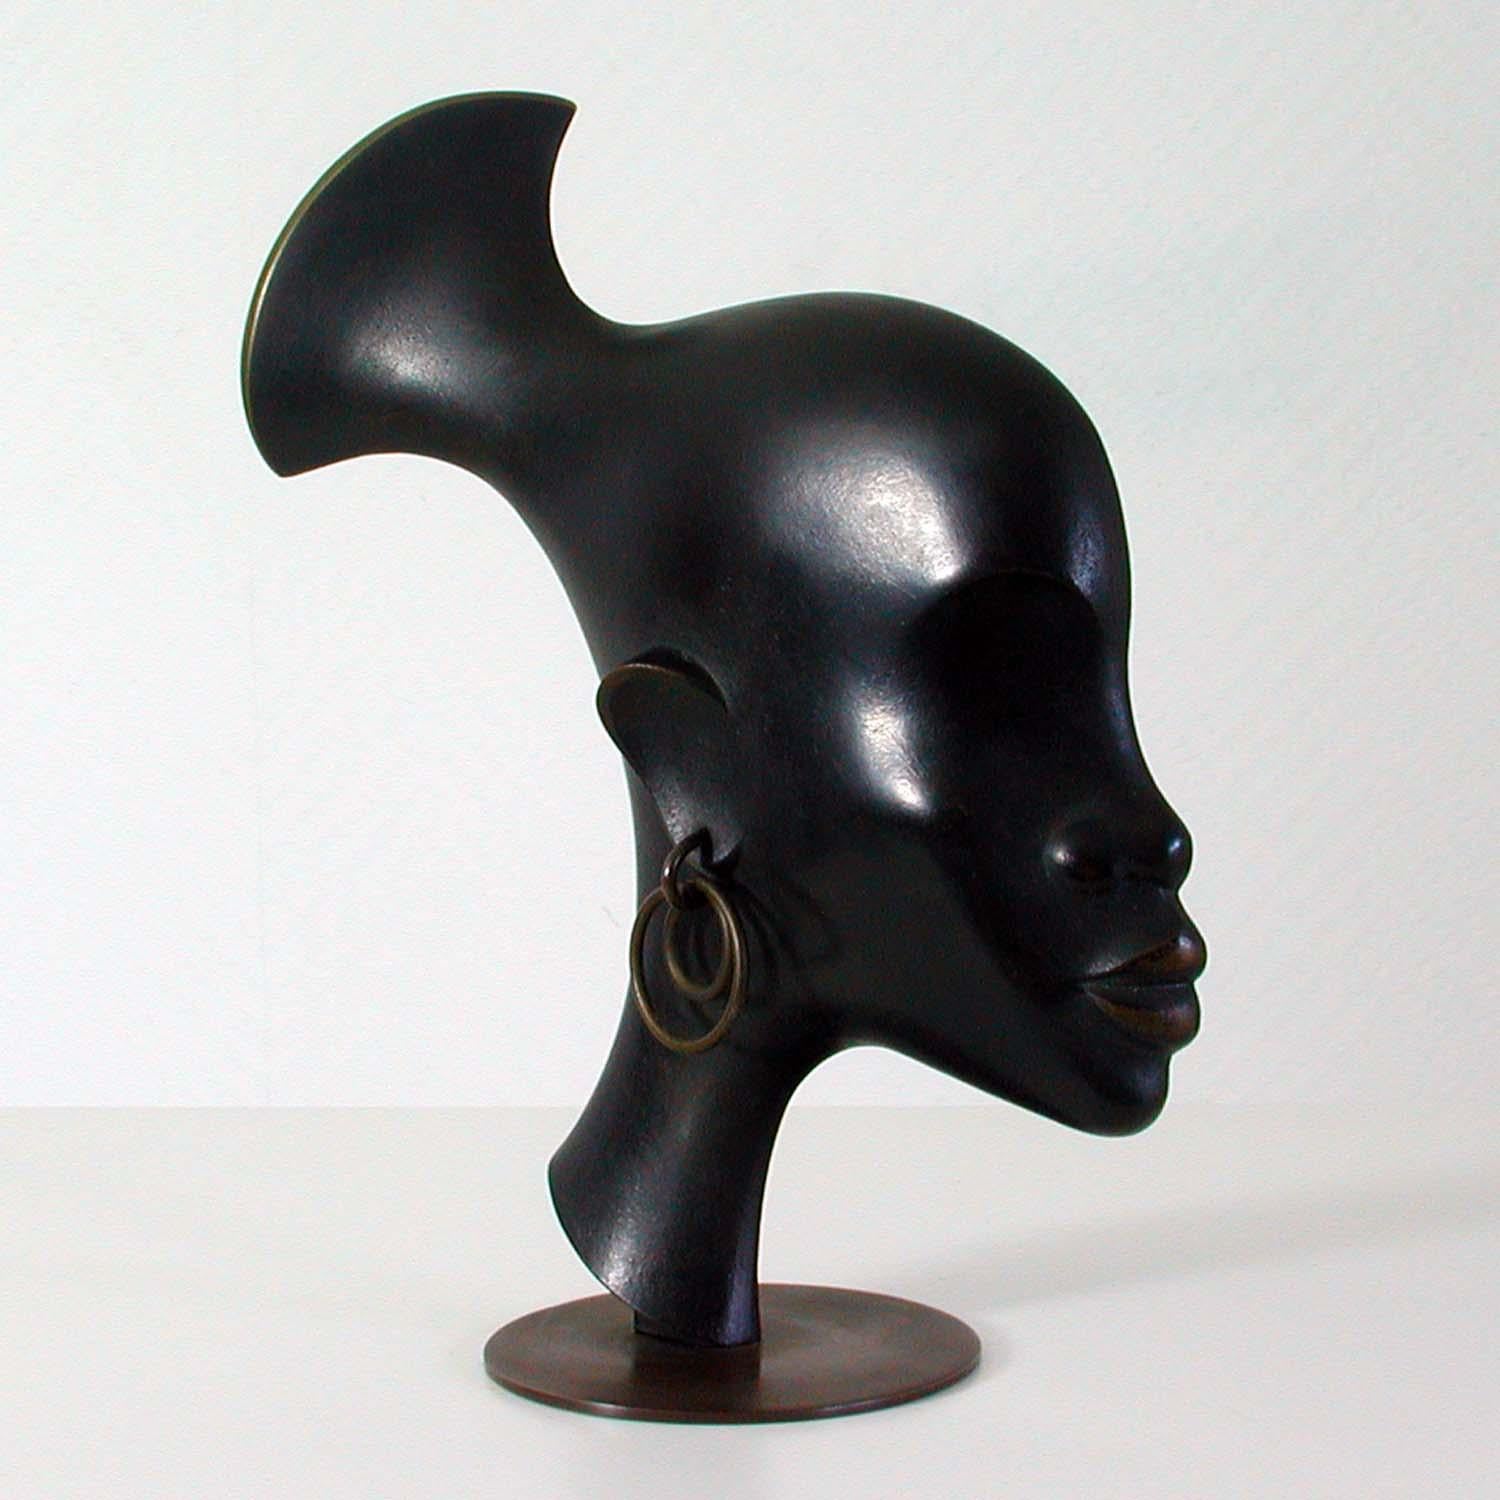 Diese schöne Skulptur wurde in den 1930er Jahren von Karl Hagenauer in Wien zur Zeit des Art déco entworfen und hergestellt.

Sie zeigt den Kopf eines afrikanischen Kriegers und ist aus patinierter Bronze gefertigt.

Auf dem Sockel gestempelt